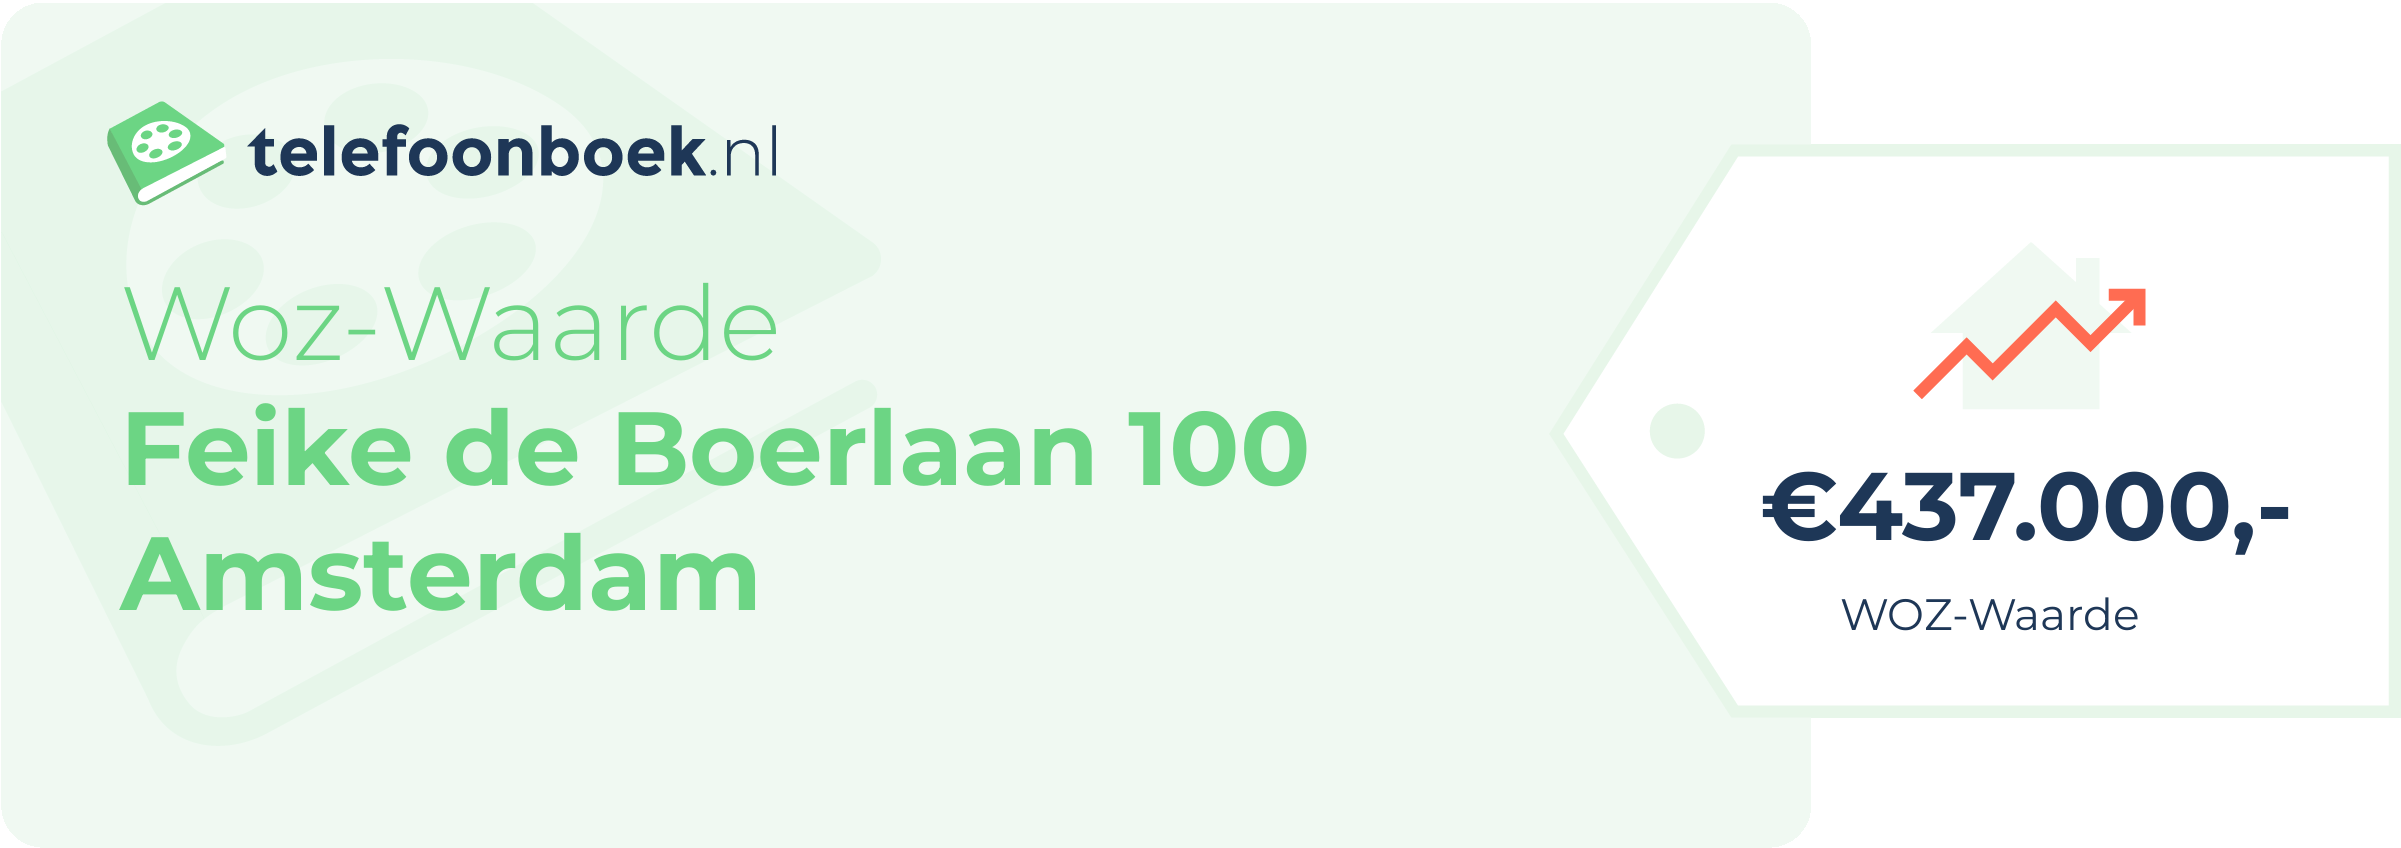 WOZ-waarde Feike De Boerlaan 100 Amsterdam